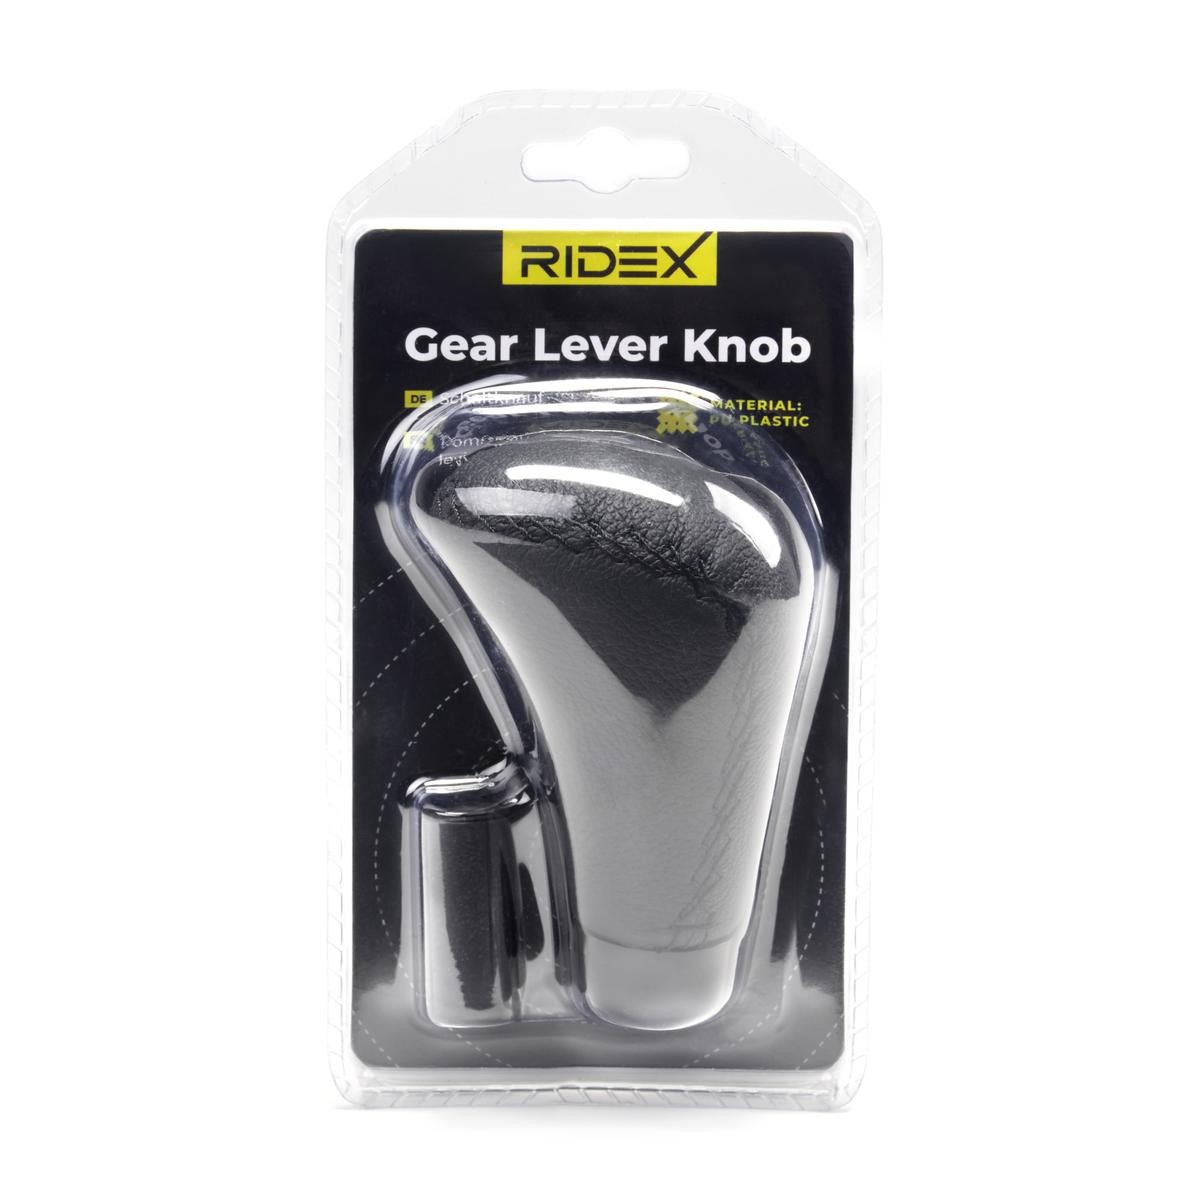 Gear shift knob RIDEX 3707A0020 for car